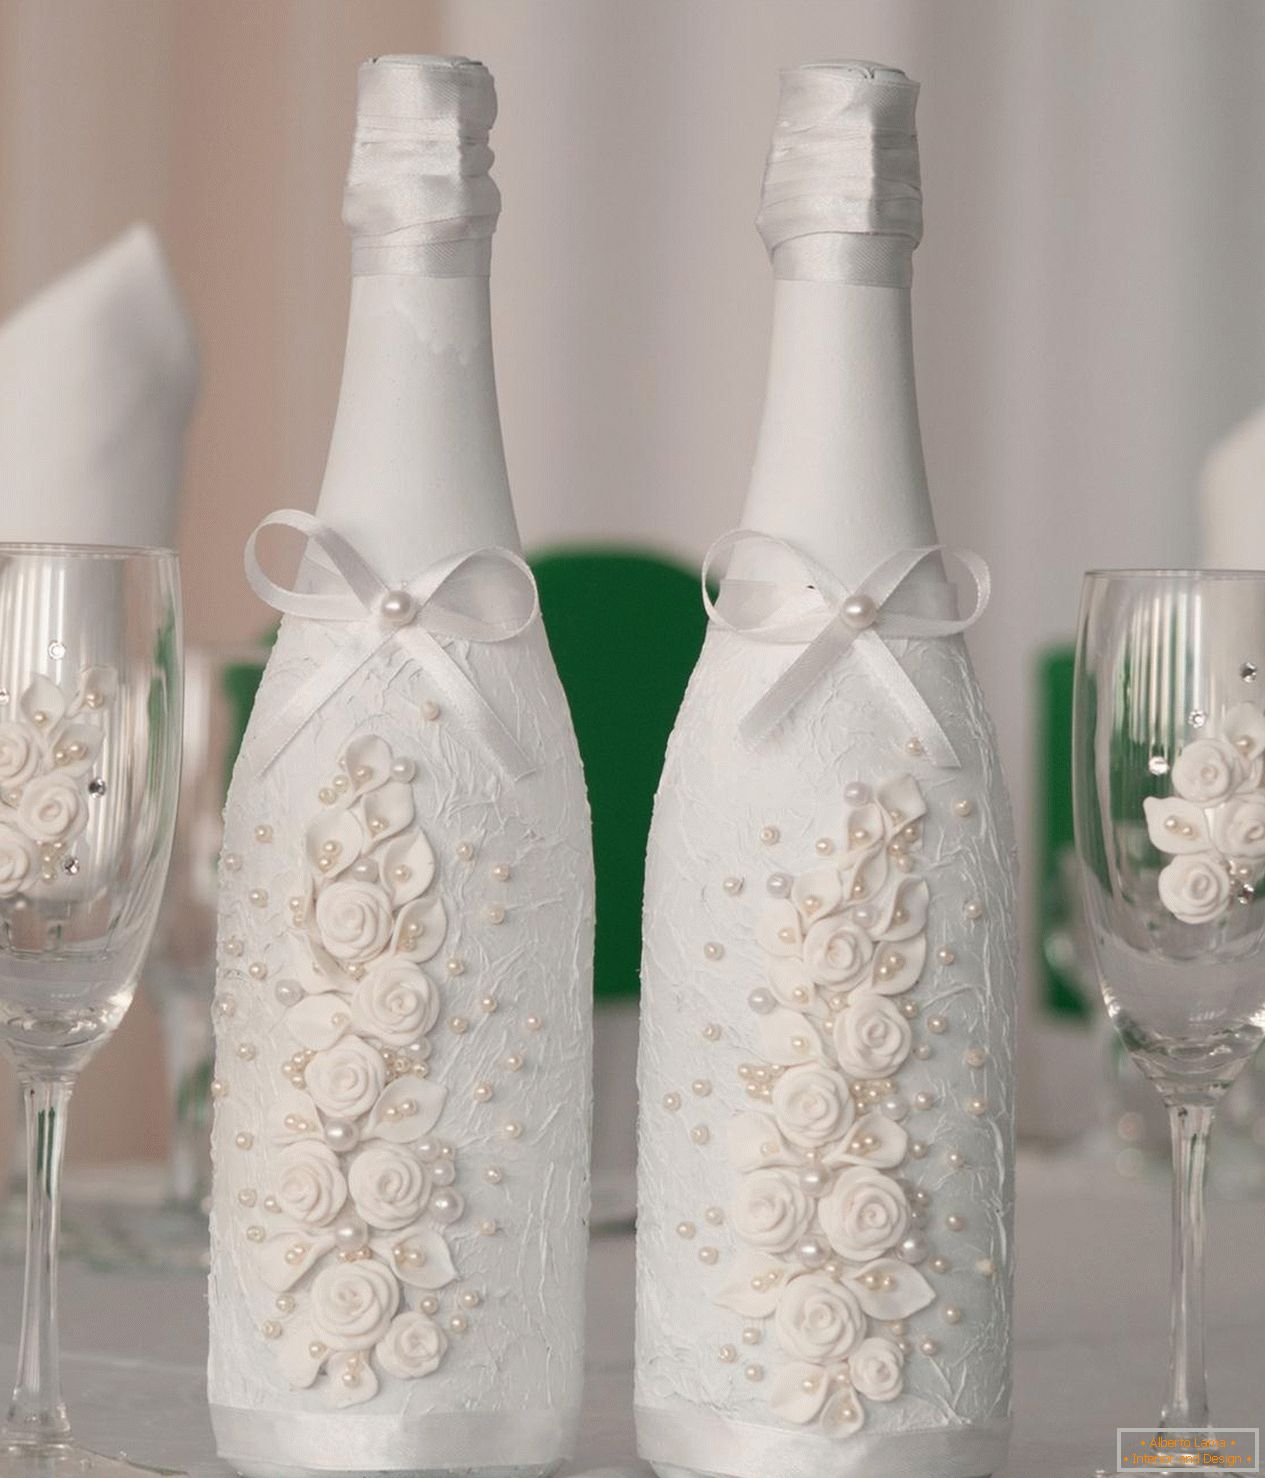 Design elegante di bottiglie e bicchieri